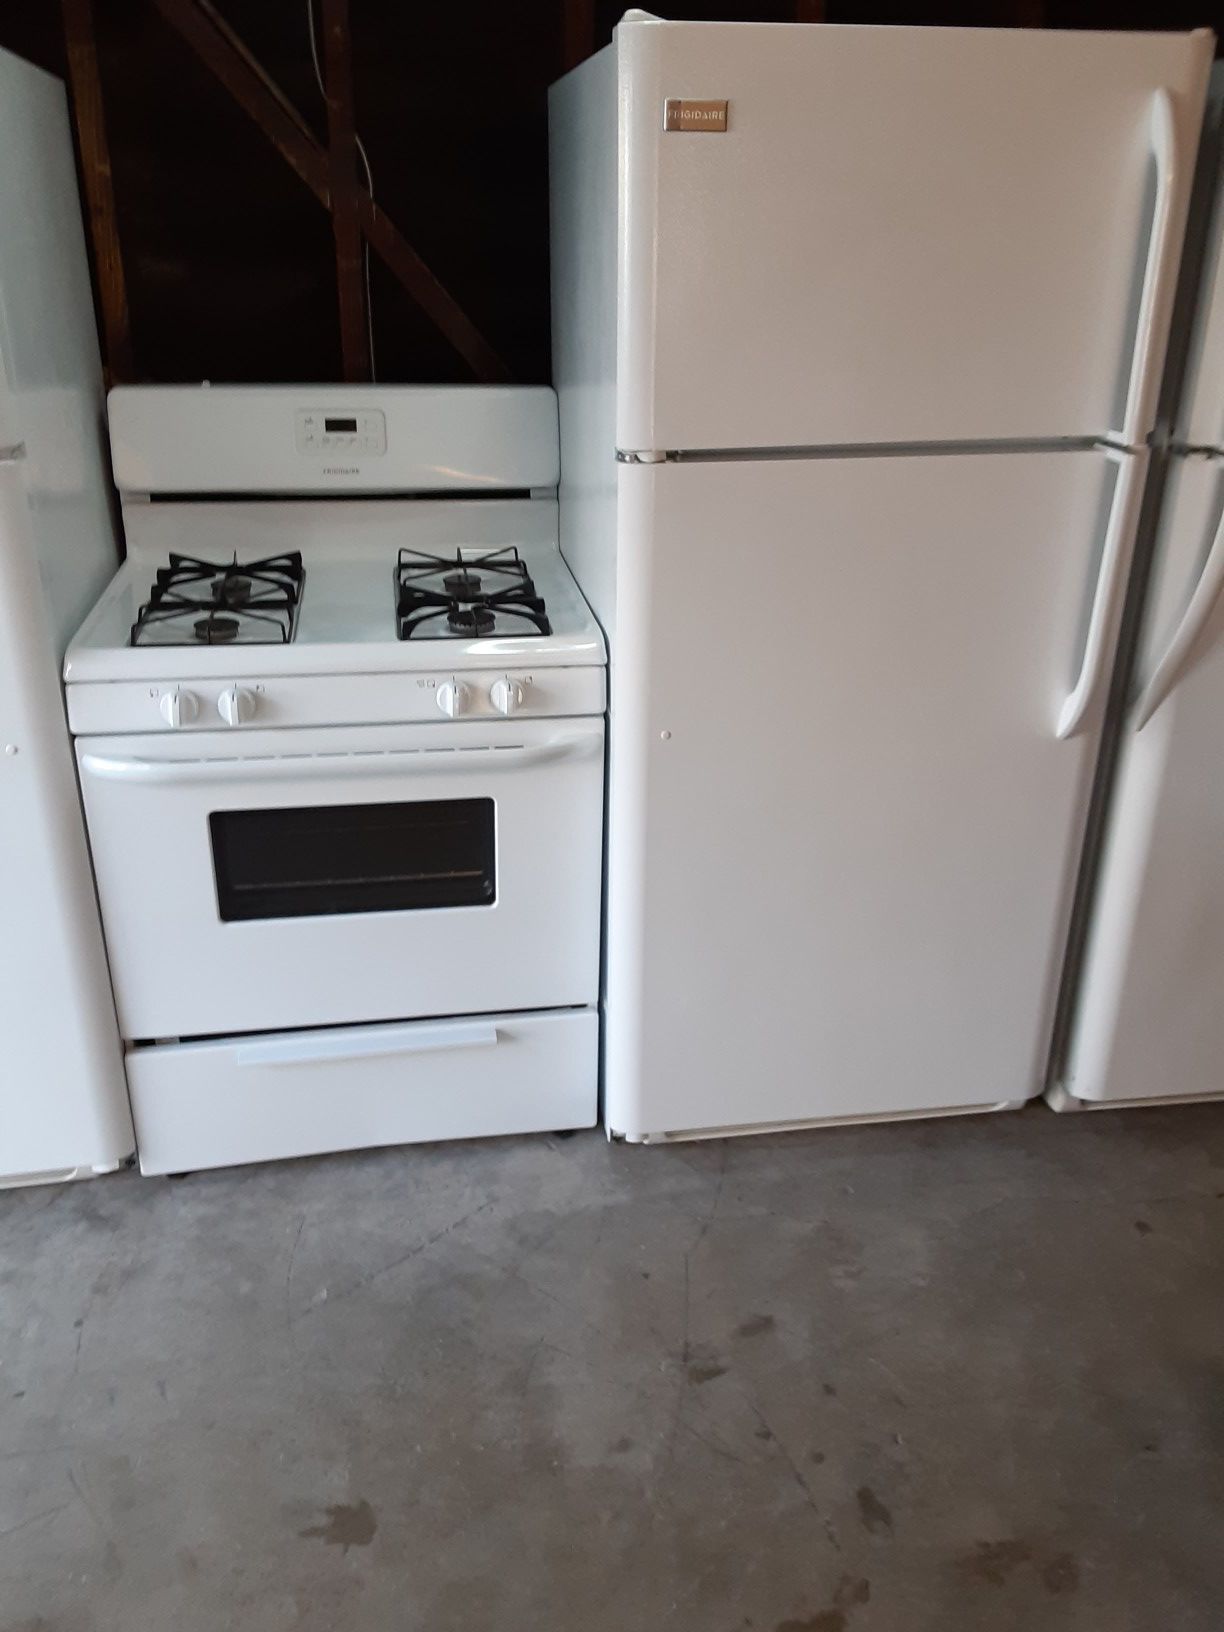 Refrigerator and stove frigidaire